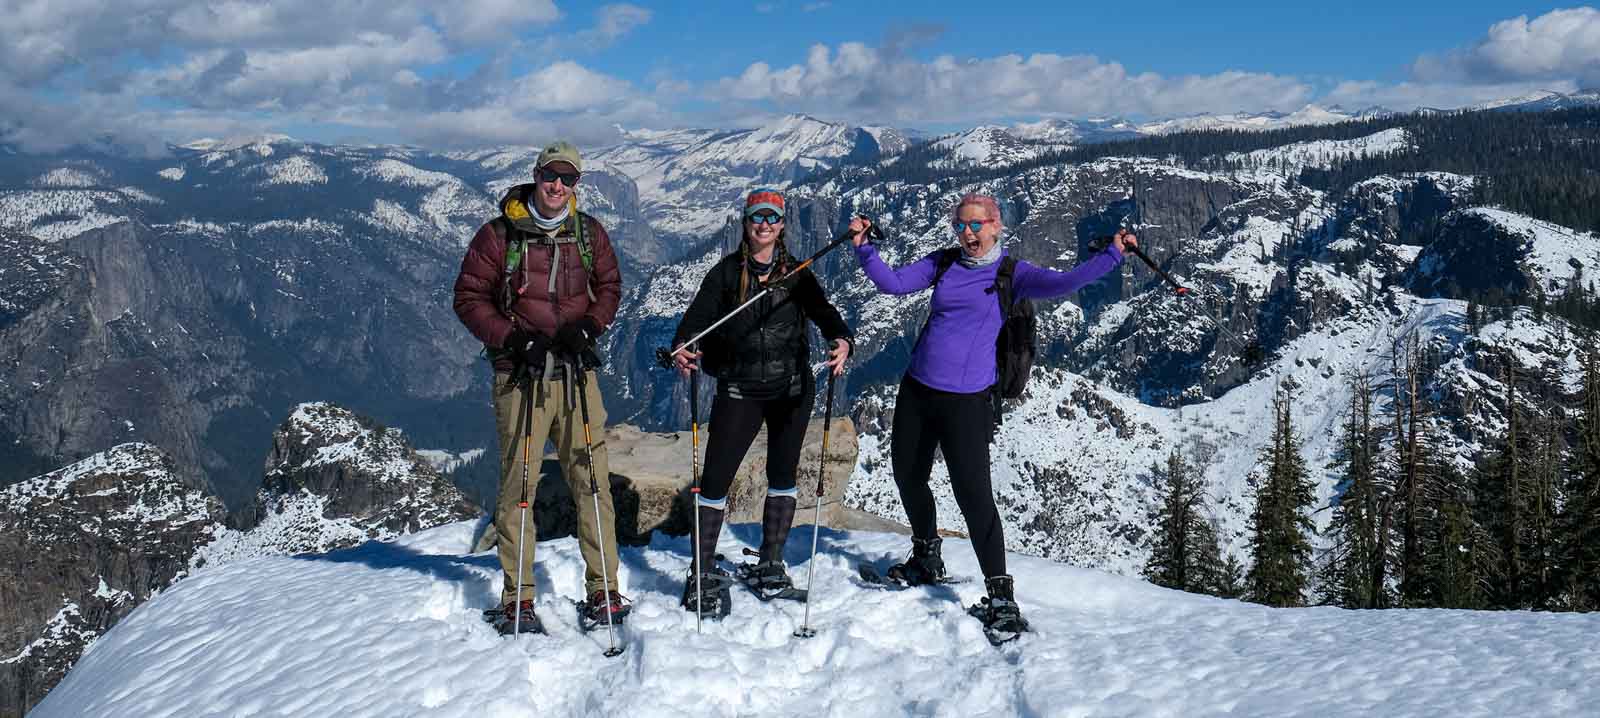 Participants enjoying Snowshoeing in Yosemite